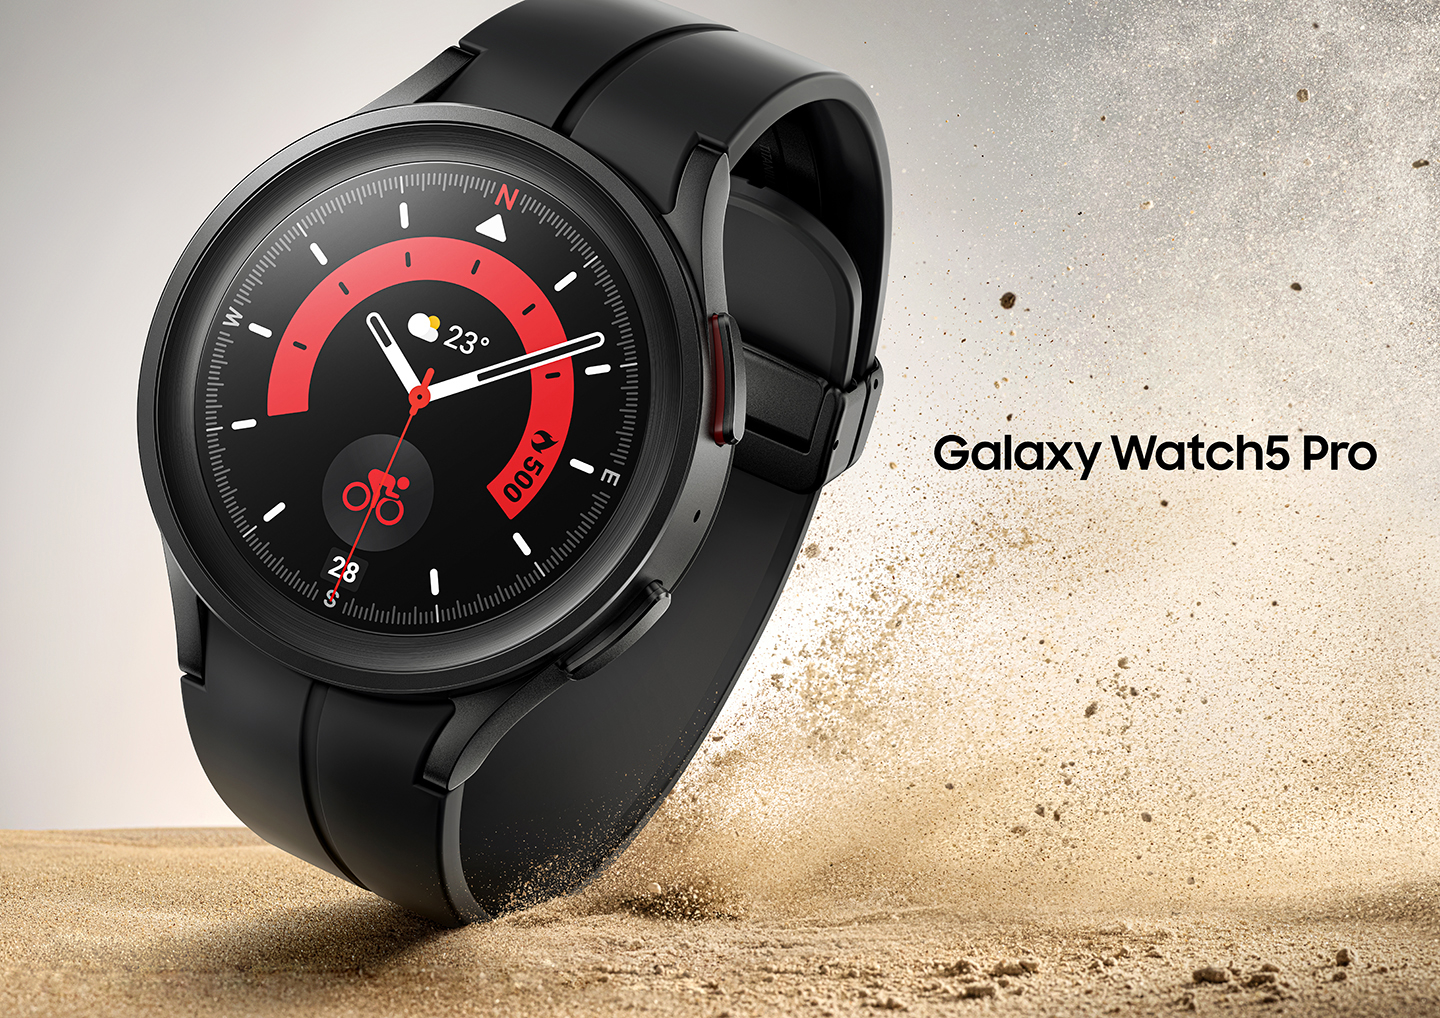 Samsung accompagne la Galaxy Watch 5 d'un modèle Pro